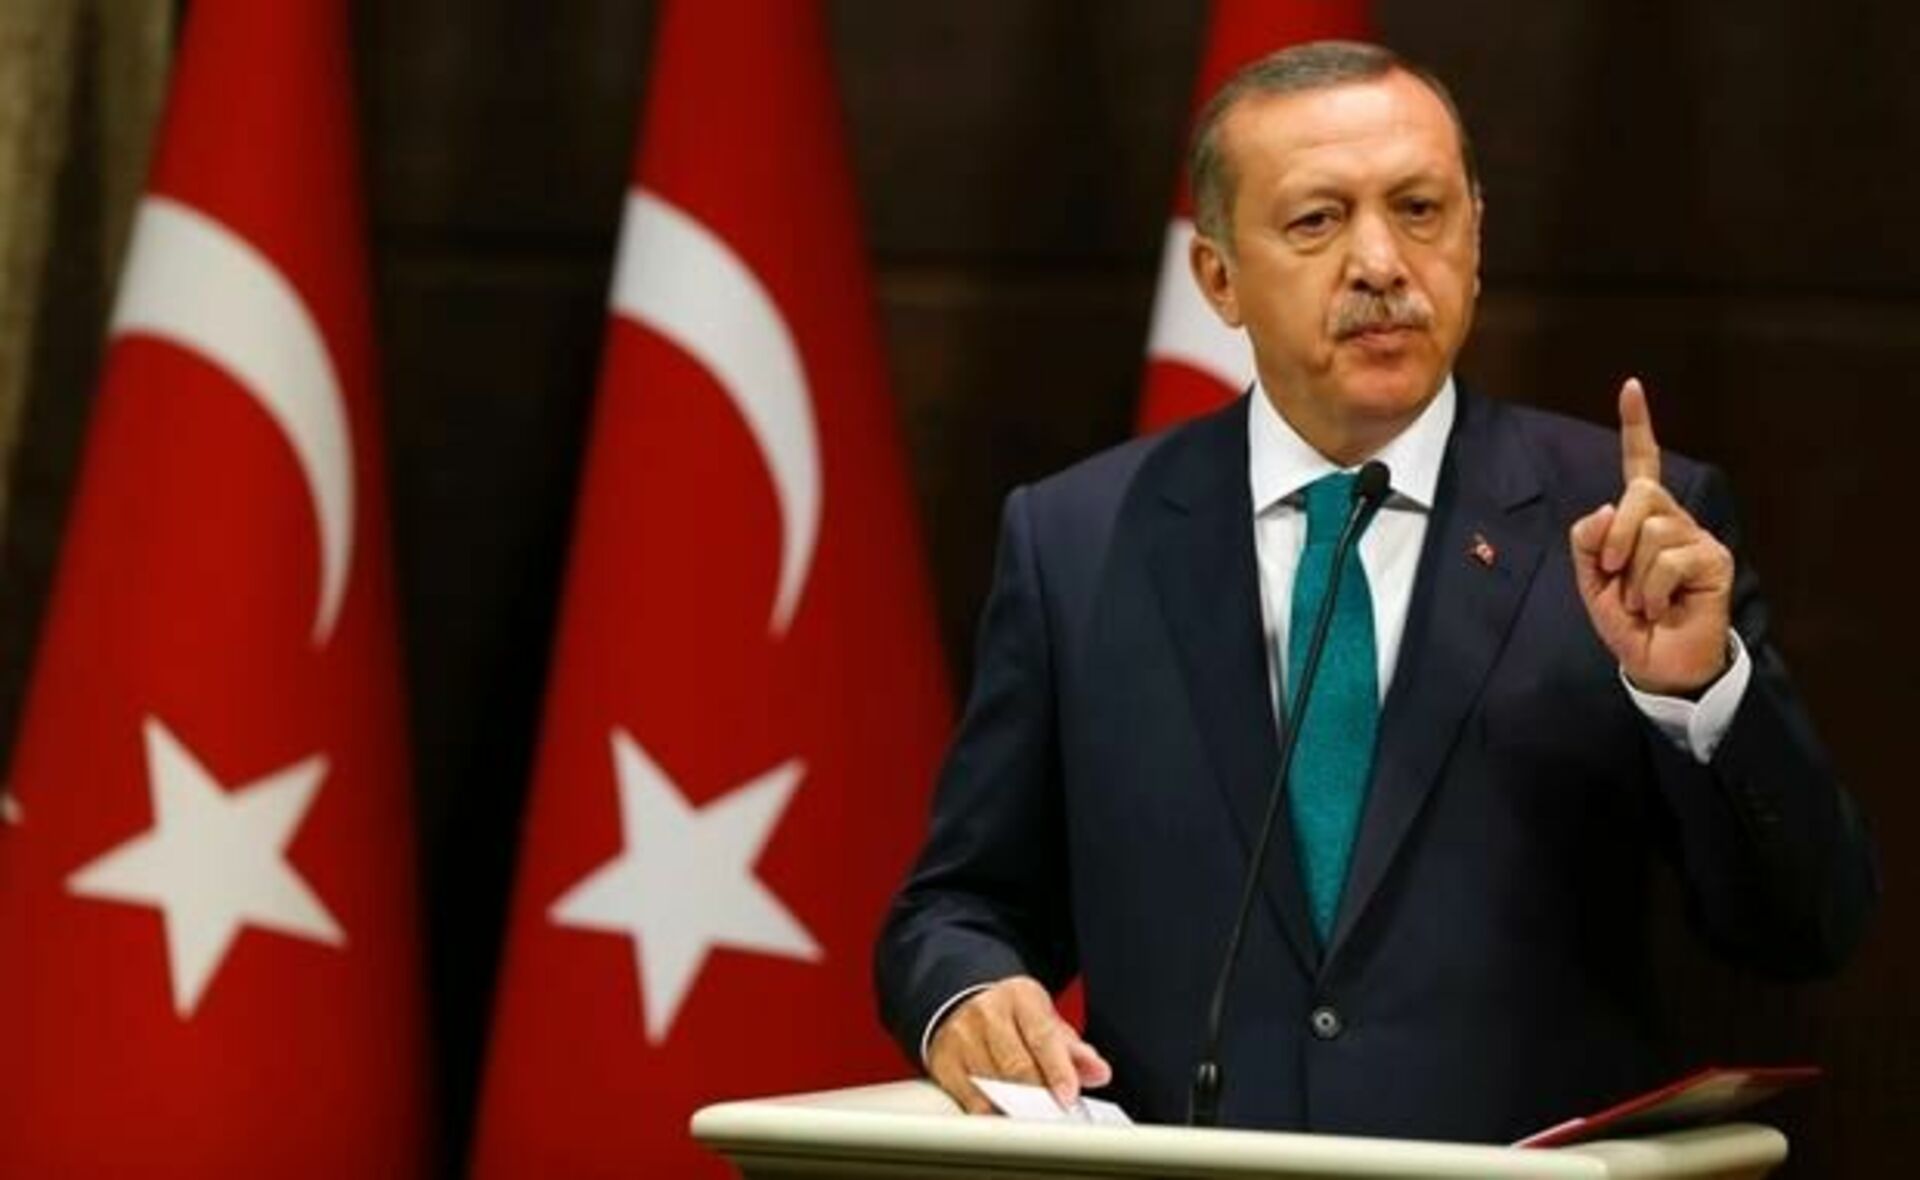 Турция президентская. Фото Эрдогана президента Турции. Реджеп Тайип Эрдоган злой. Реджеп Тайип Эрдоган на флаге.